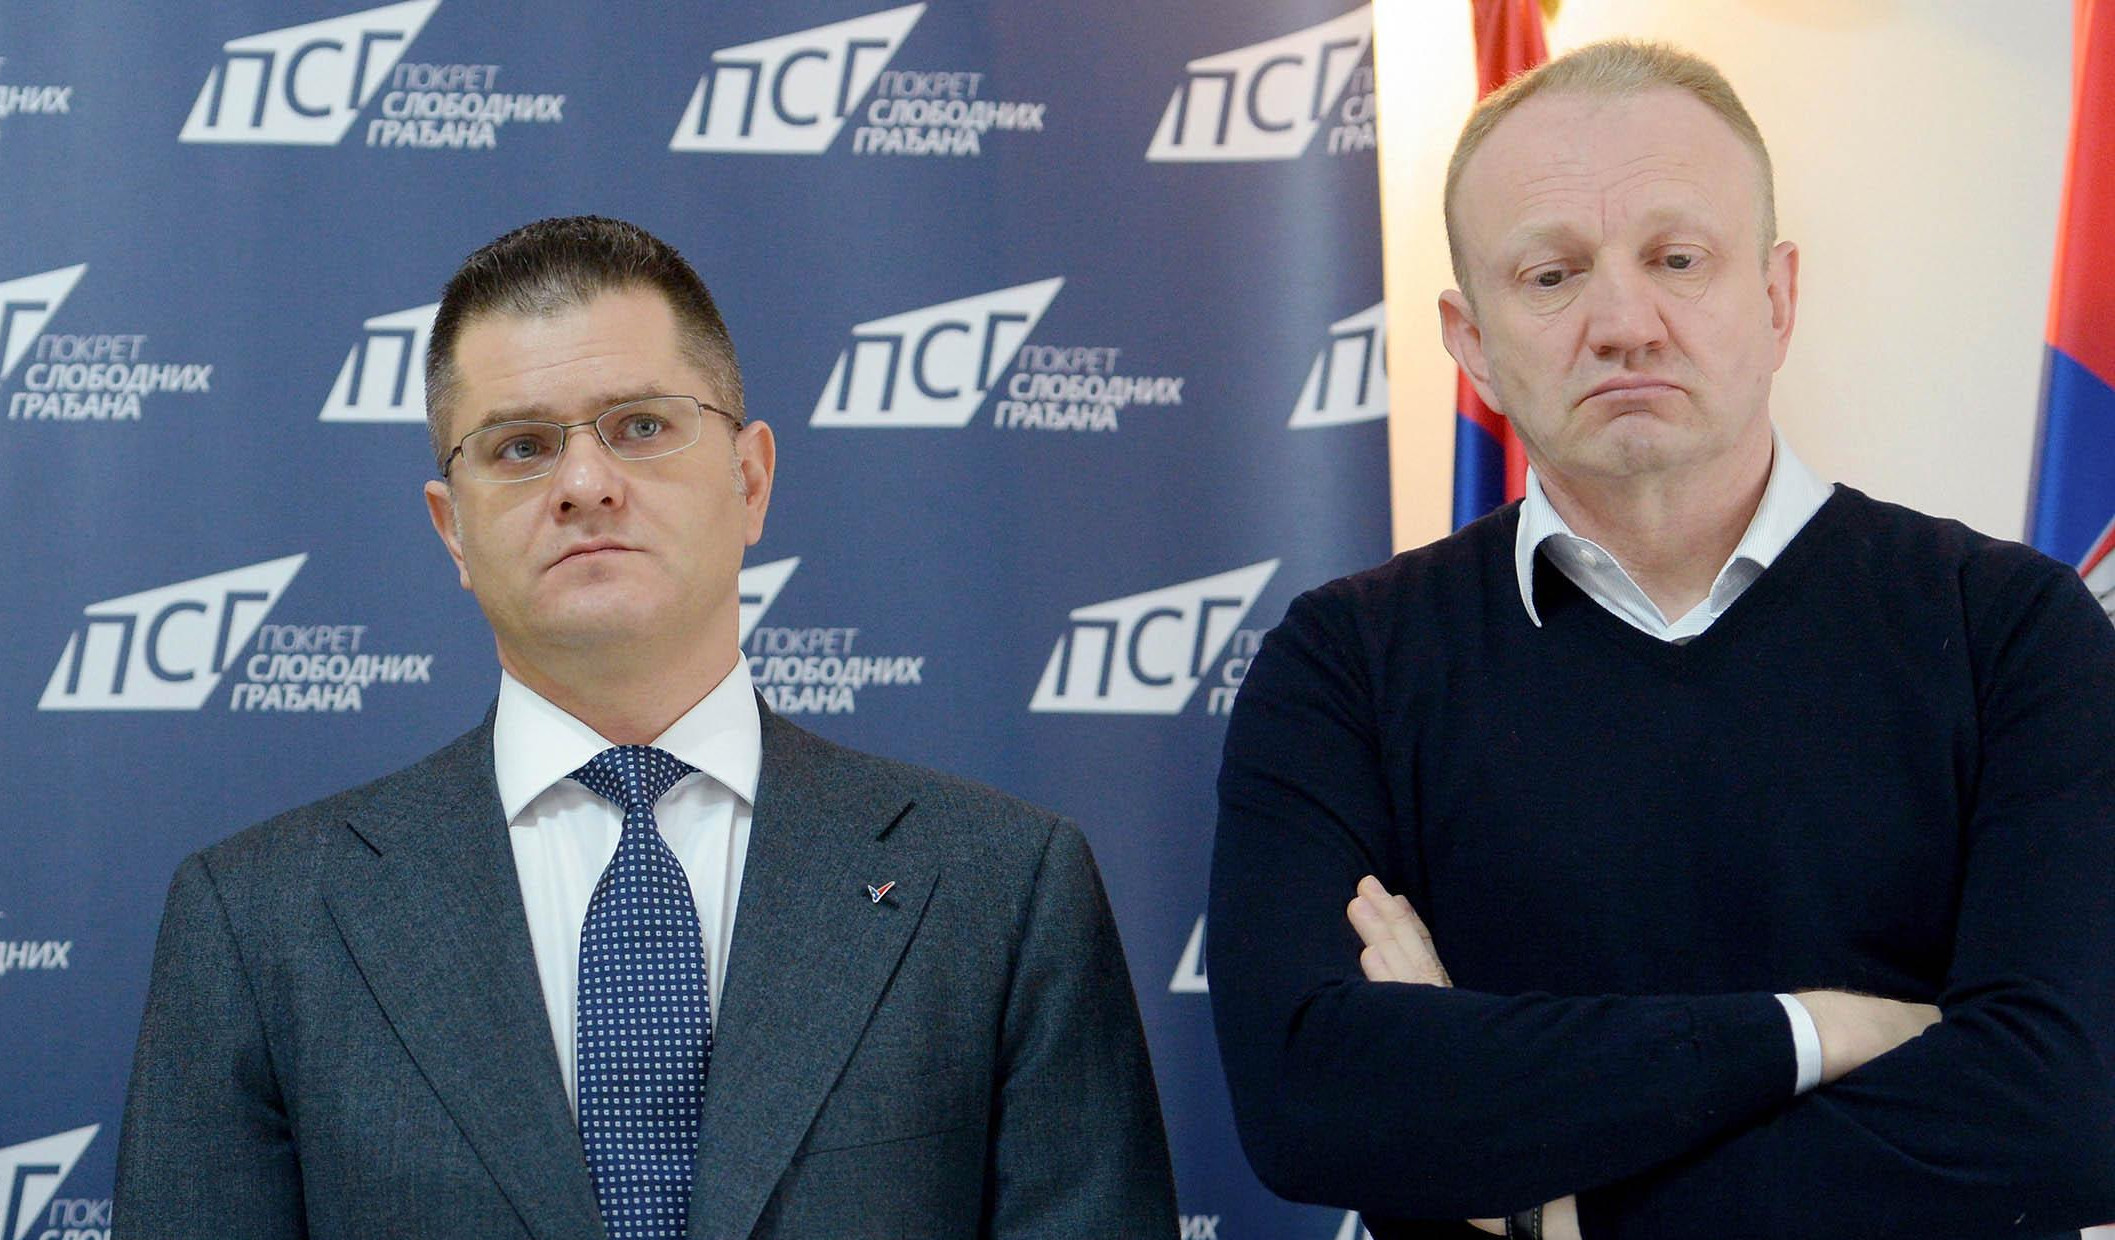 ŠTA ĆEMO SAD? Opozicija na Tviteru optuživala Vučića za nestanak novinara, a sad ćuti!